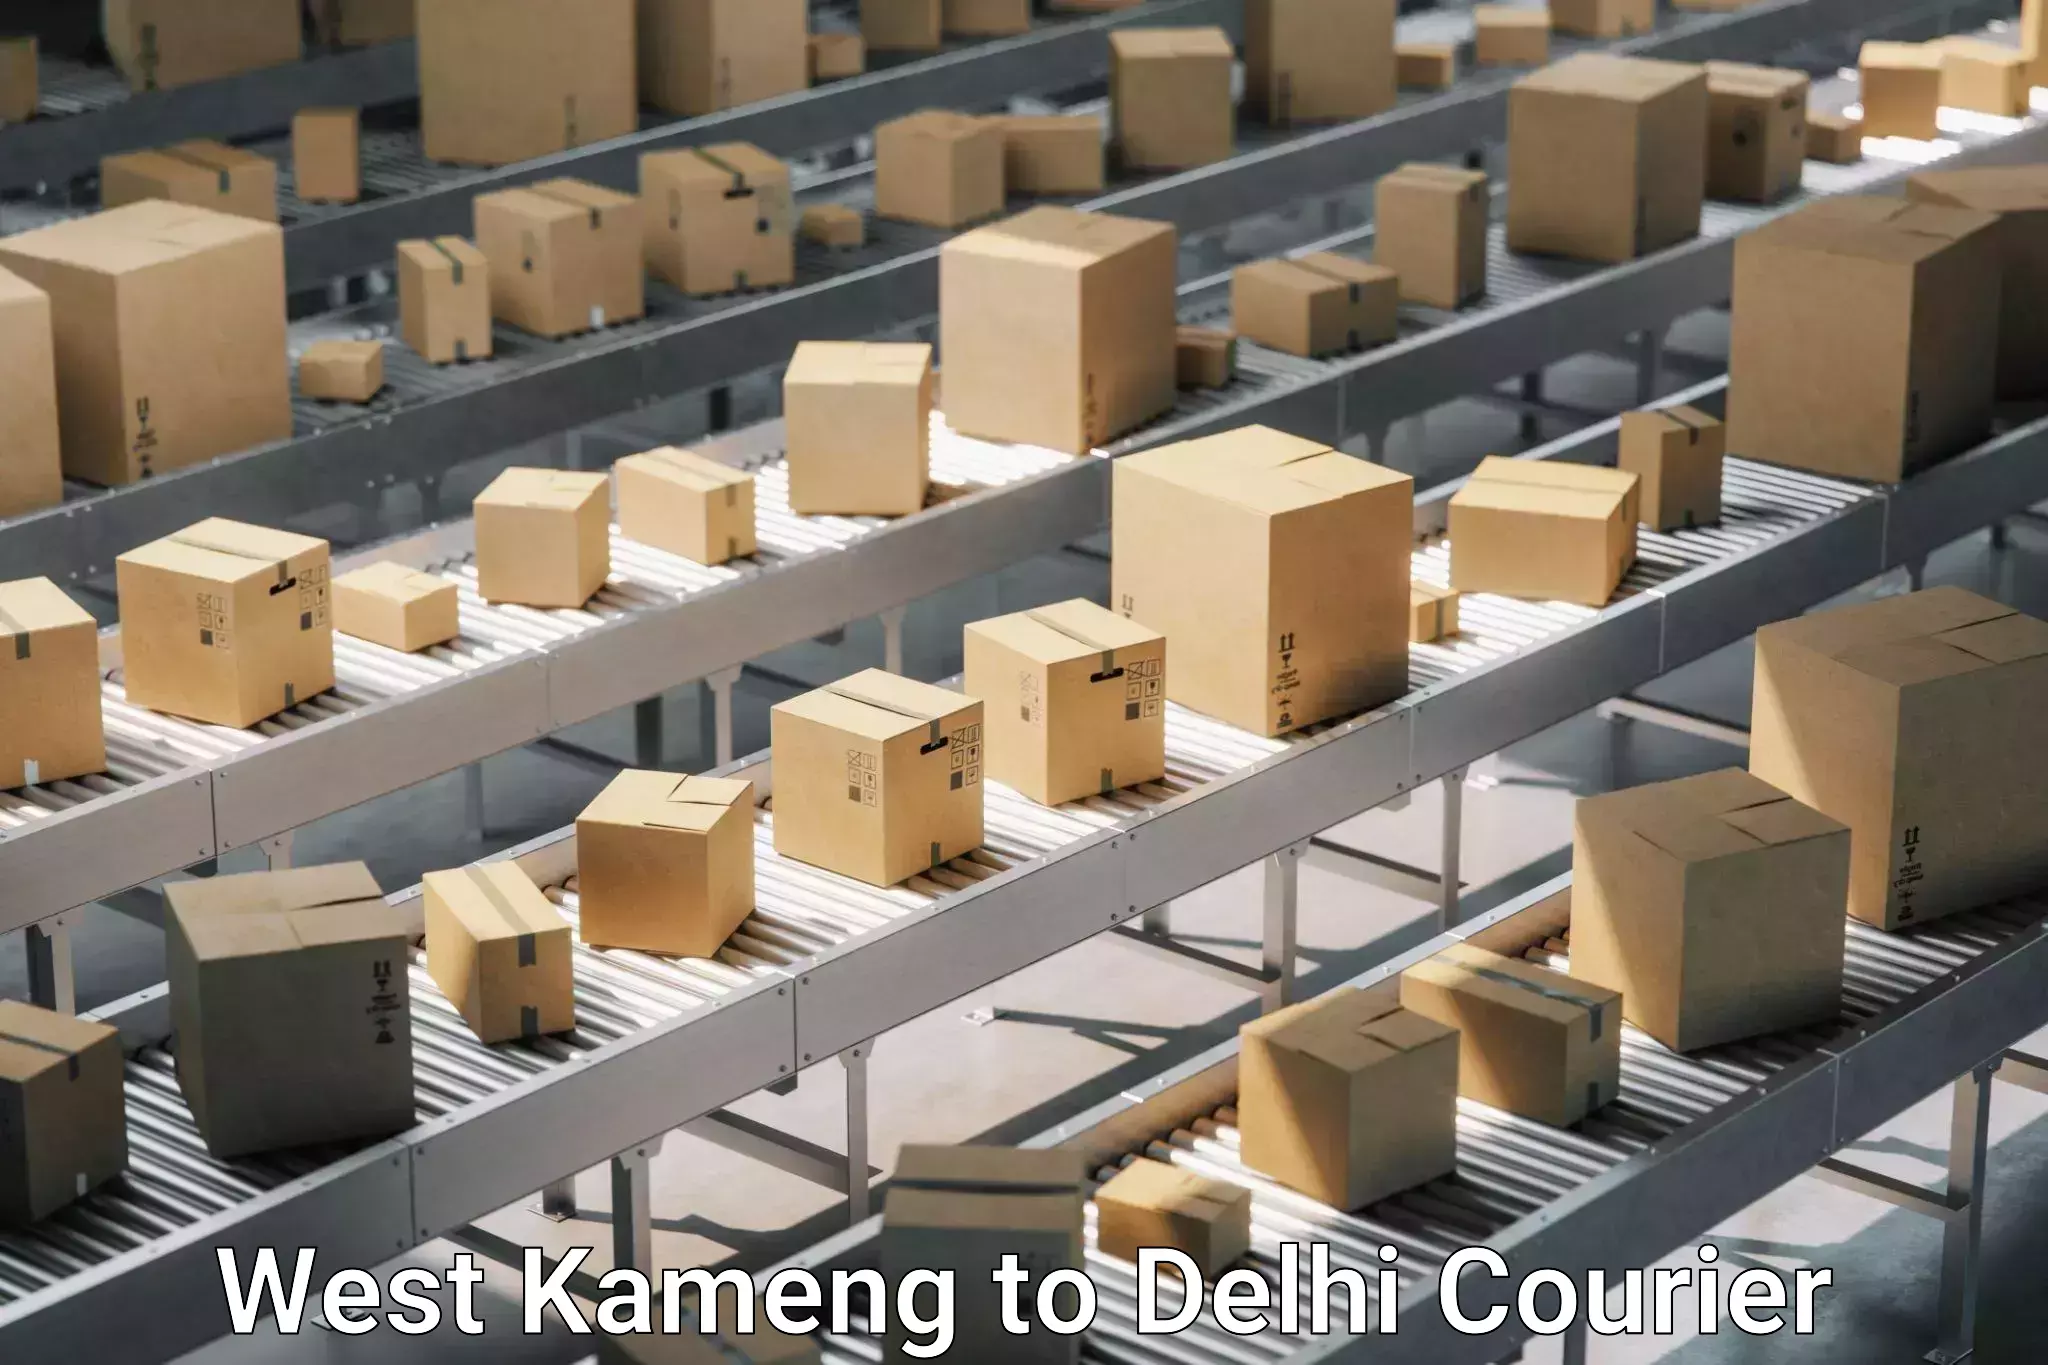 Furniture transport experts West Kameng to Delhi